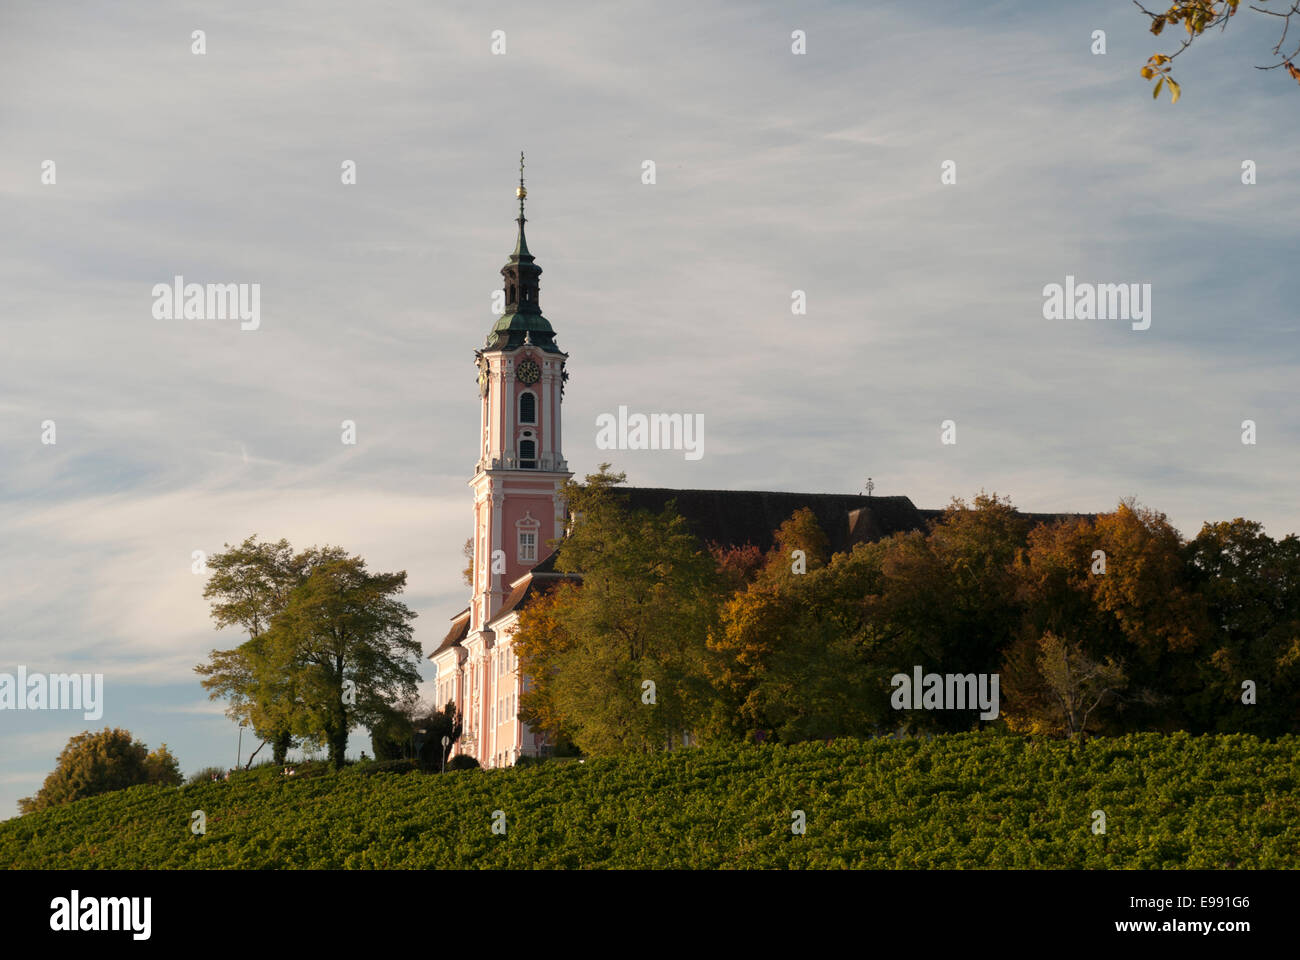 Kloster Birnau - in the middle of vine - inmitten von Reben Stock Photo